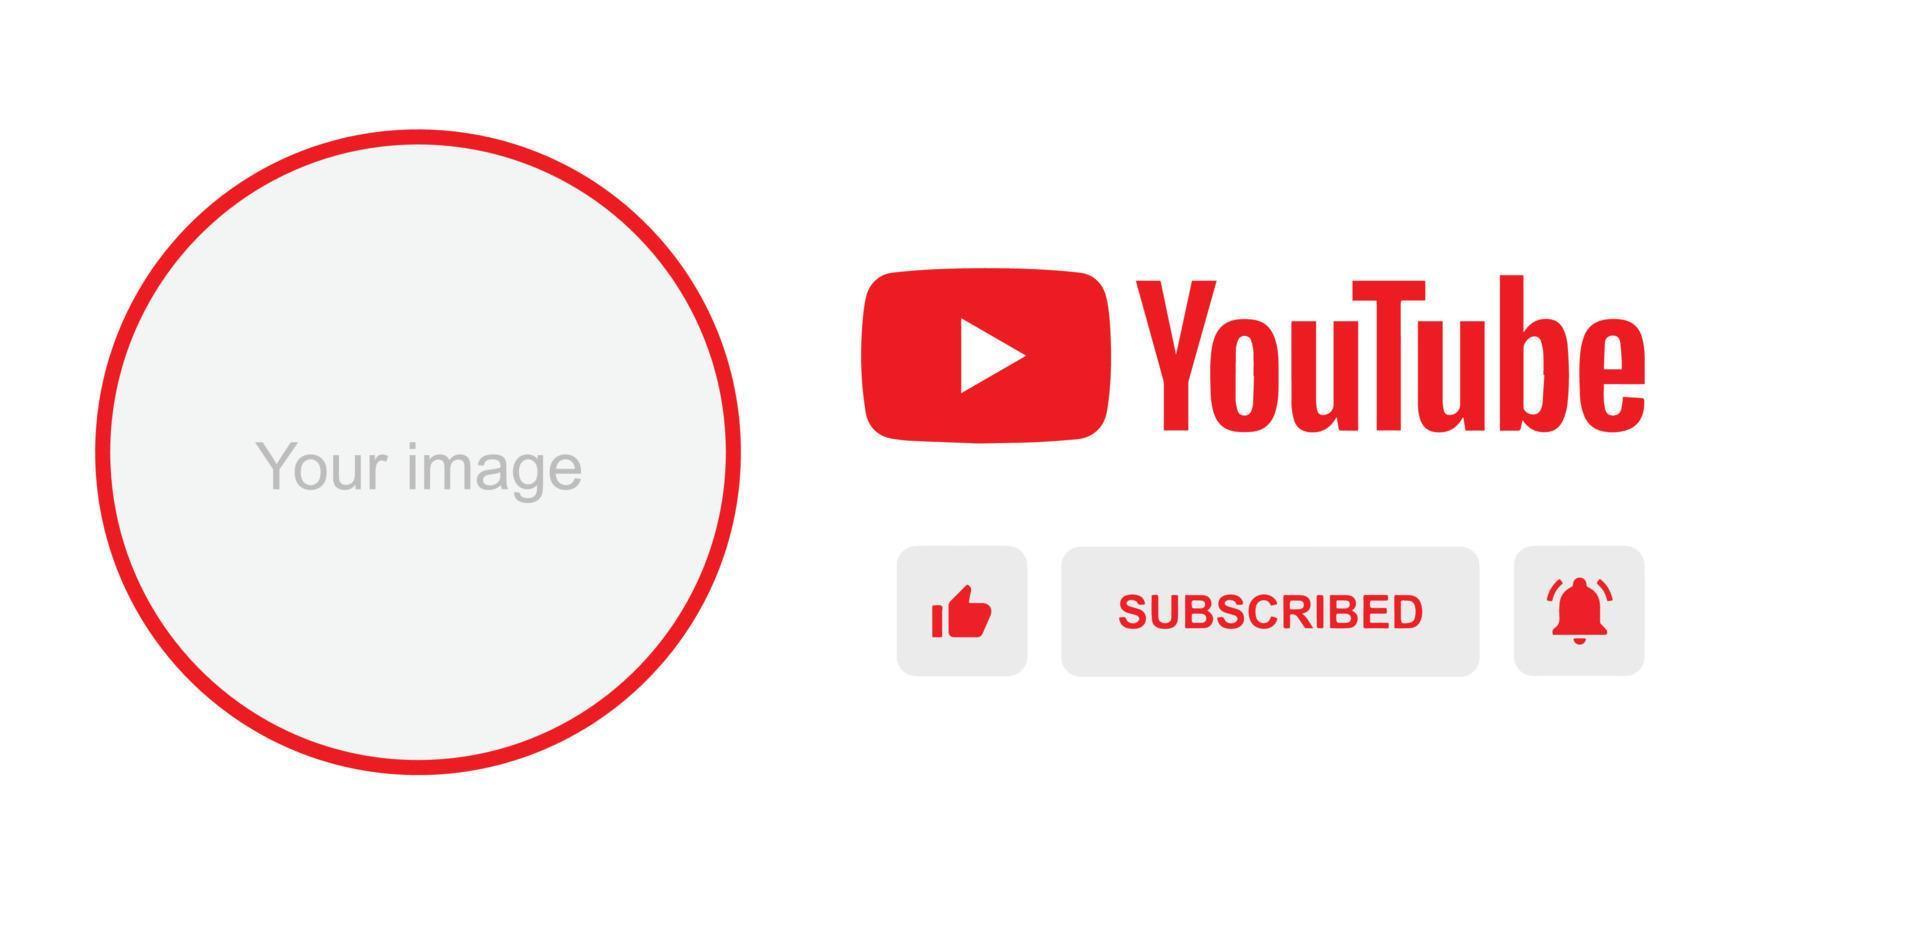 Youtube Kanal Name niedriger dritte. rot Übertragung Banner zum Video auf schwarz Hintergrund. Vektor Illustration